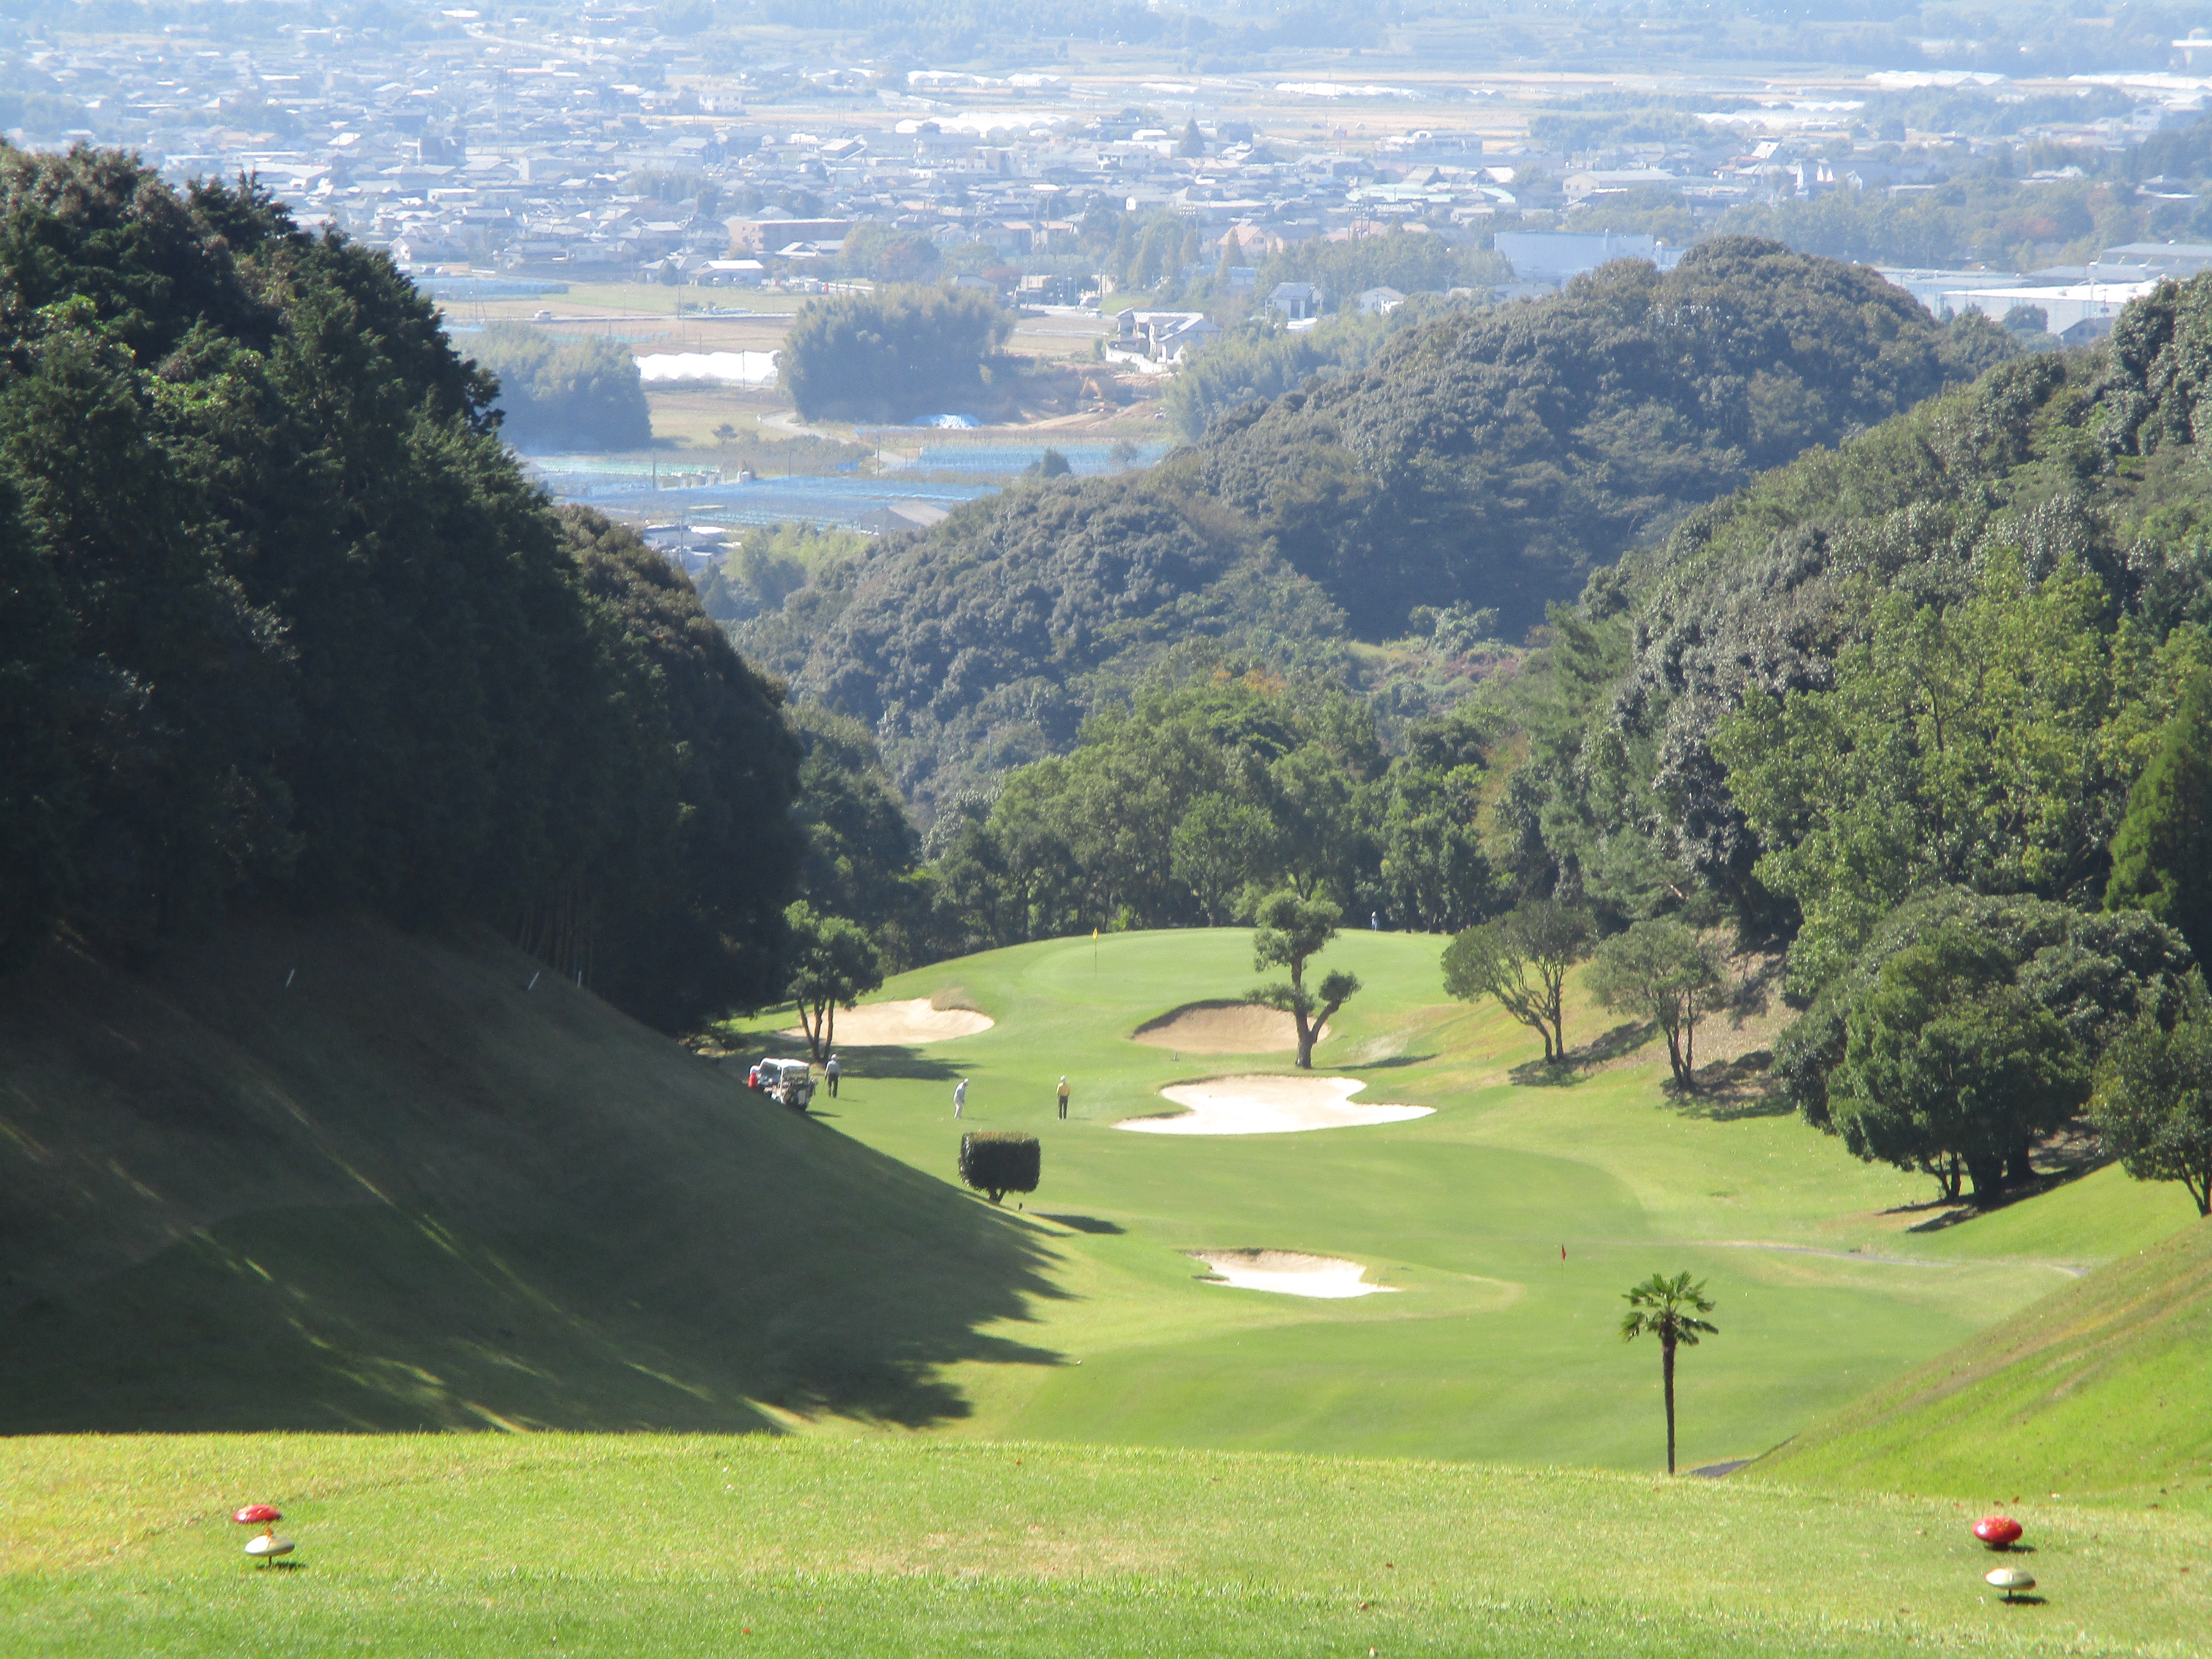 ゴルフの醍醐味を味わうことができる くせになるコースです 九州 沖縄エリアゴルフ場情報 ゴルフダイジェスト オンライン